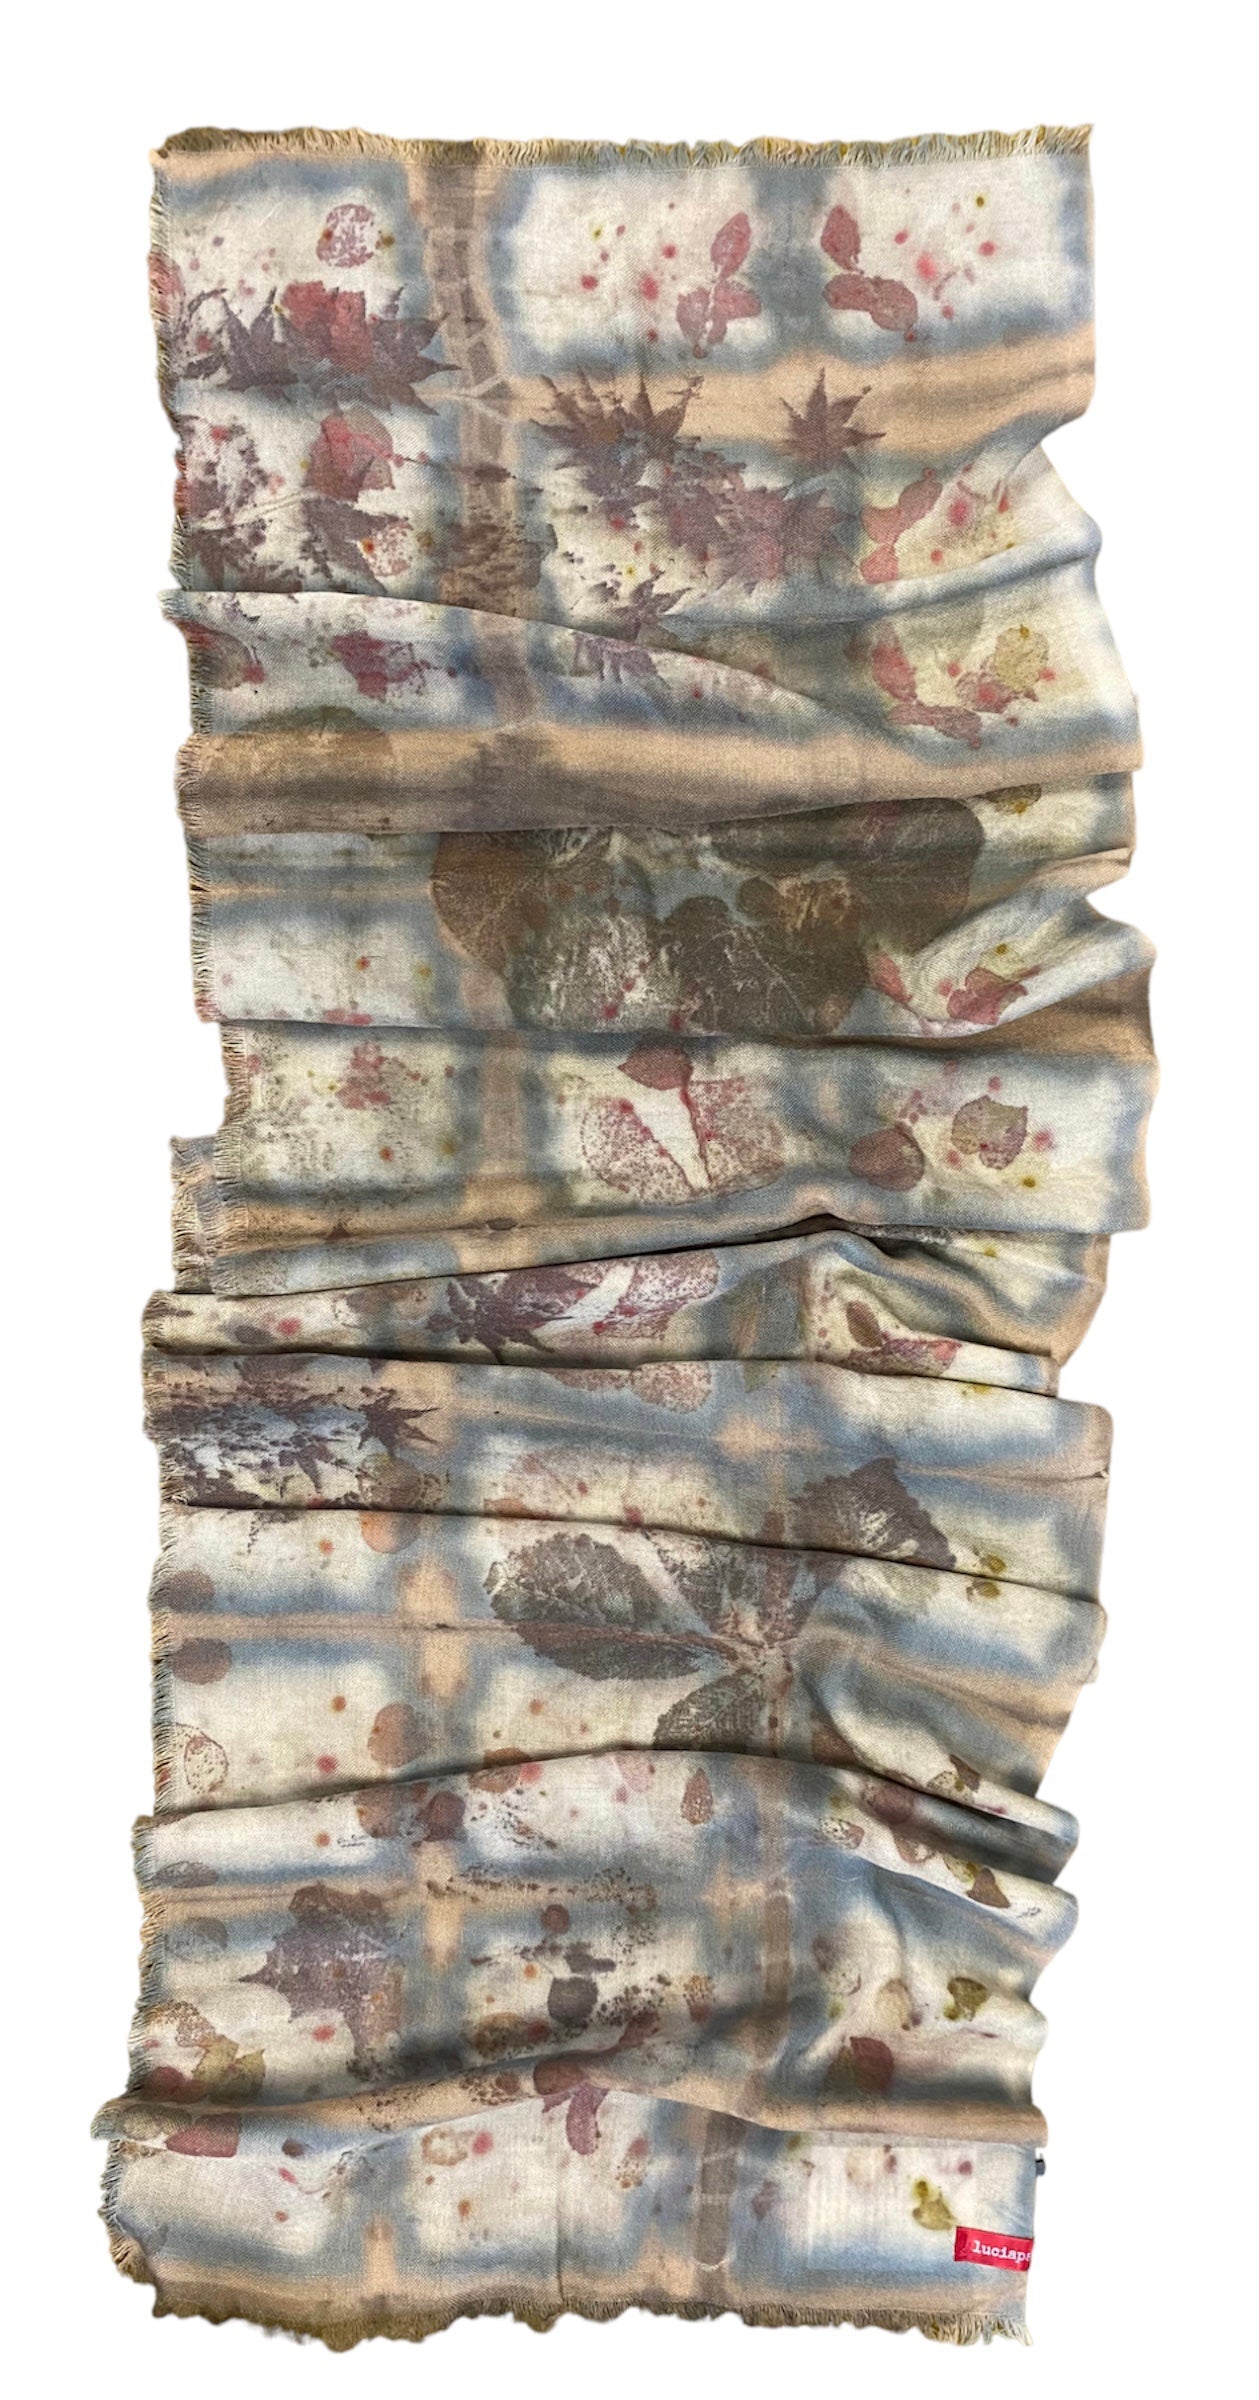 sciarpa in garza di lana con colori marroni e blu e beige stampata a mano con foglie di ippocastano, acero, albero di giuda